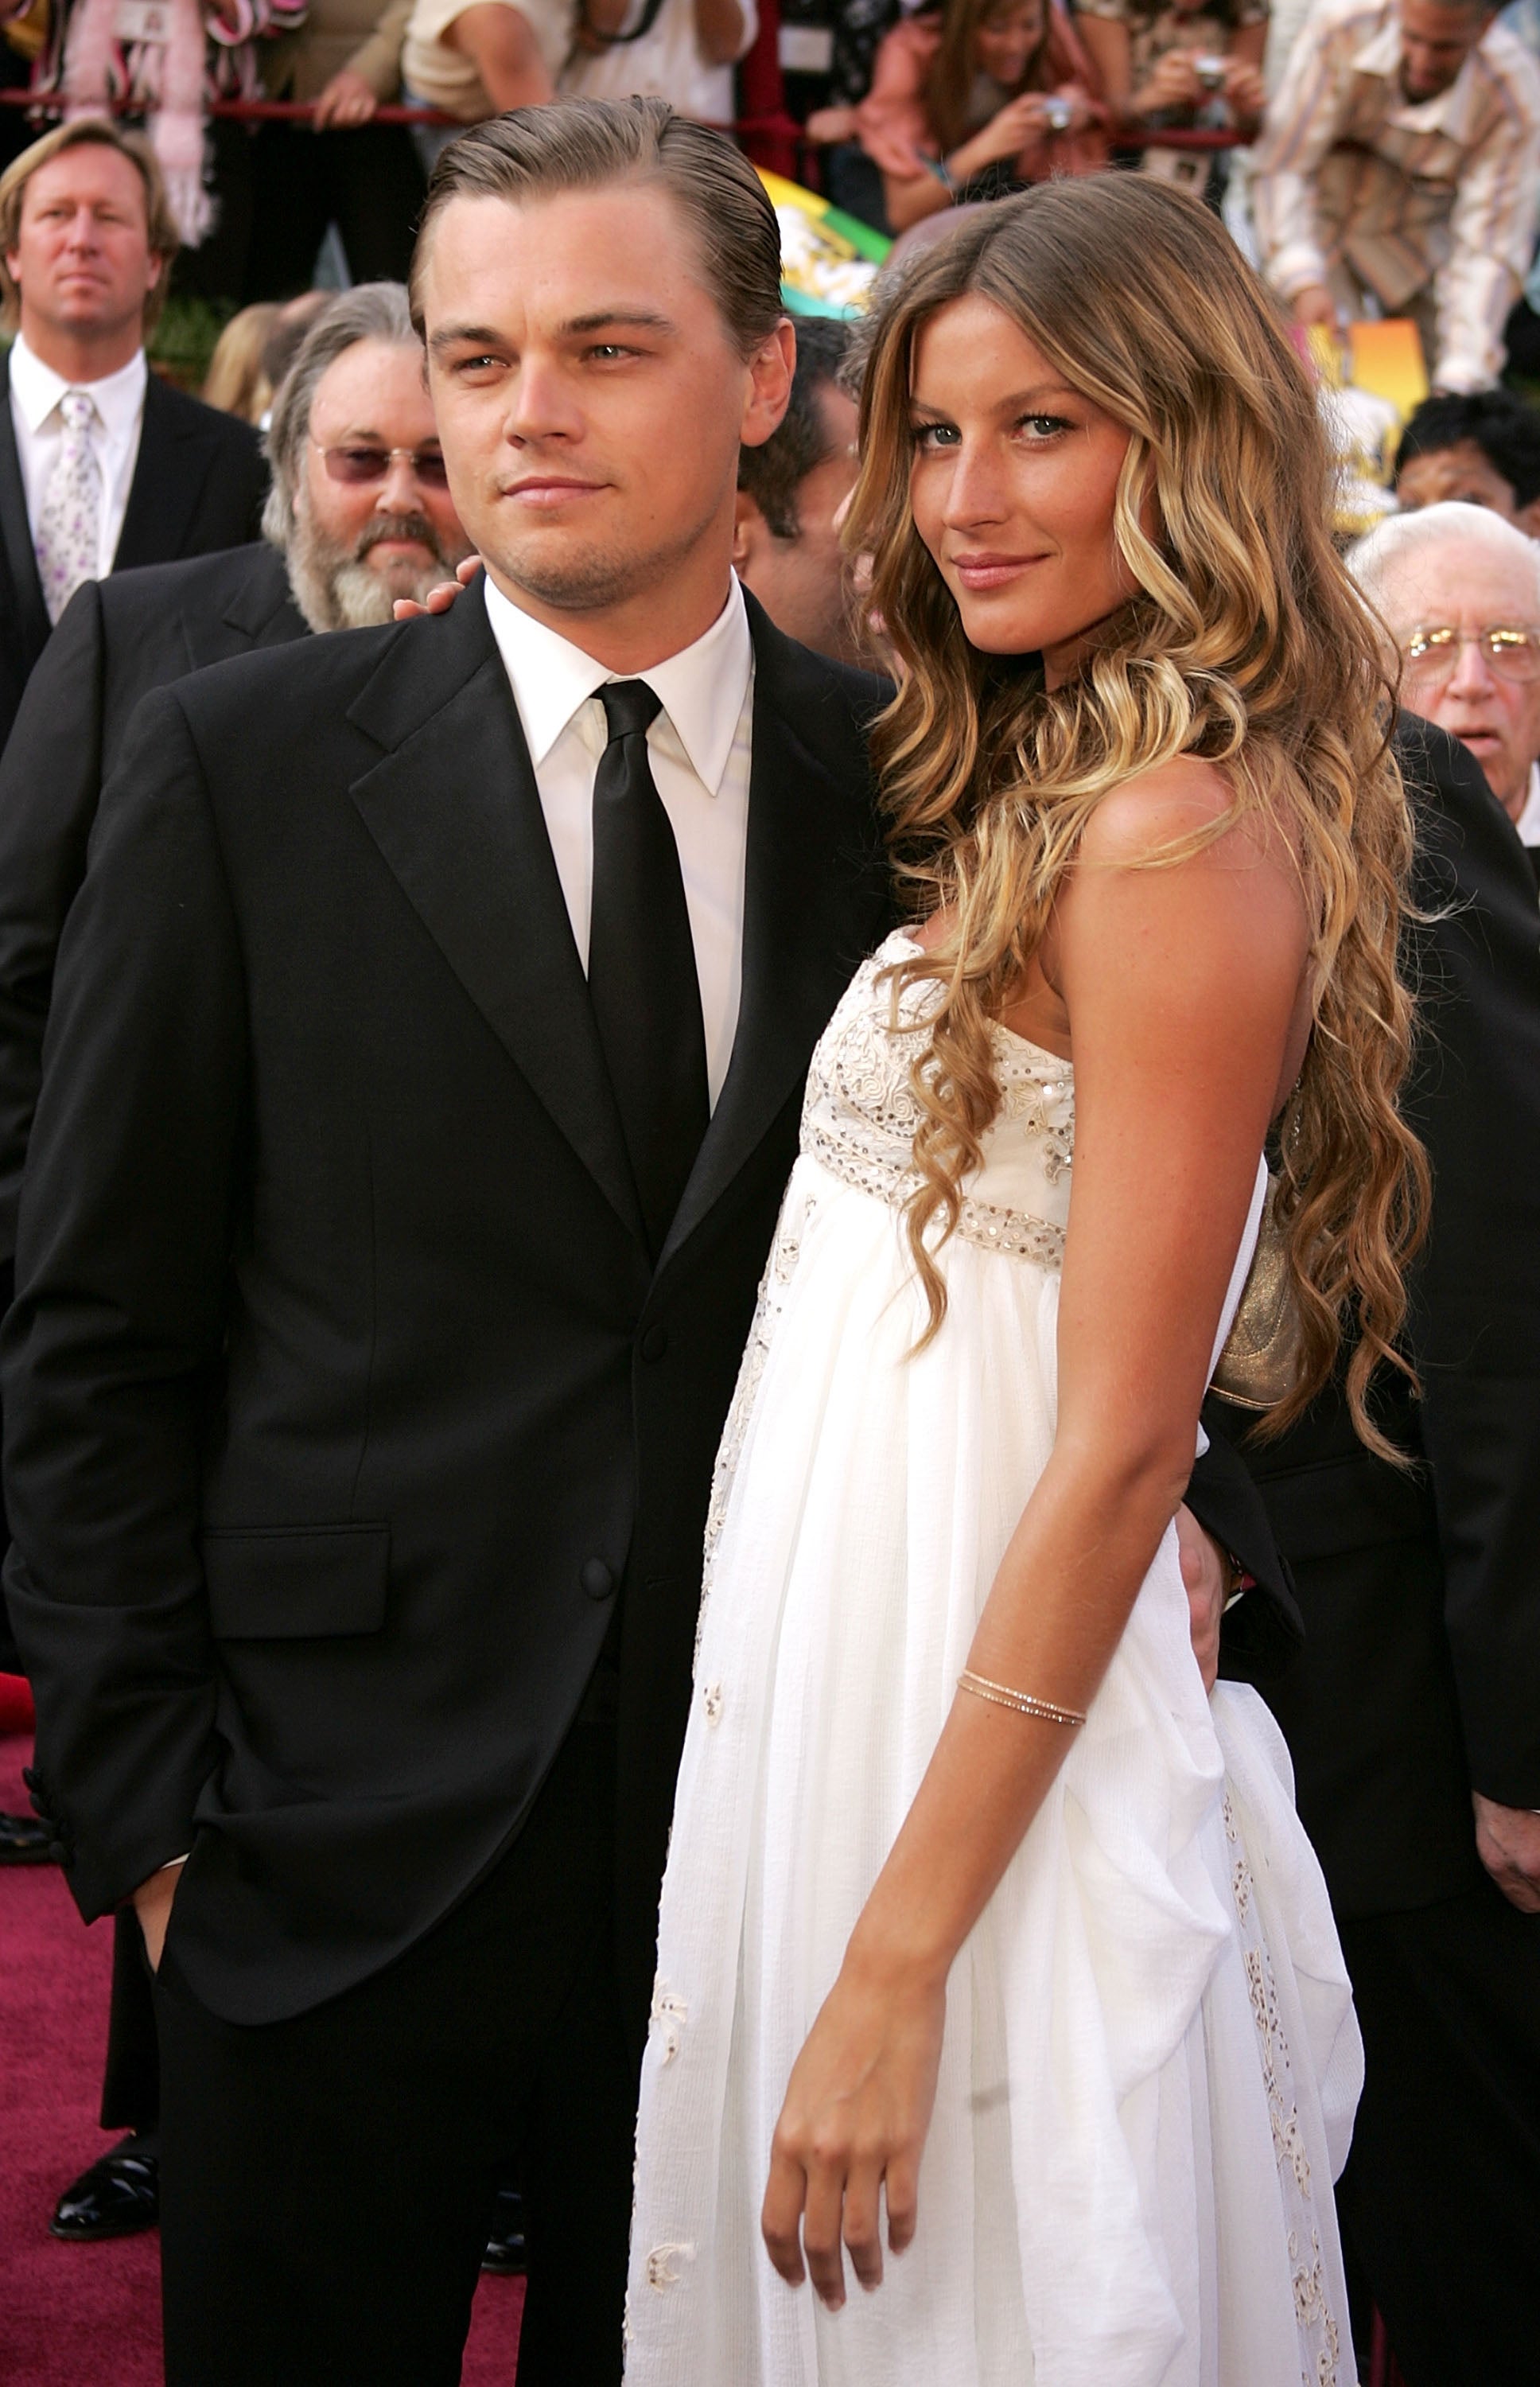 Leonardo DiCaprio empezó a salir con la modelo Gisele Bündchen cuando ella tenía 18 años y él 24